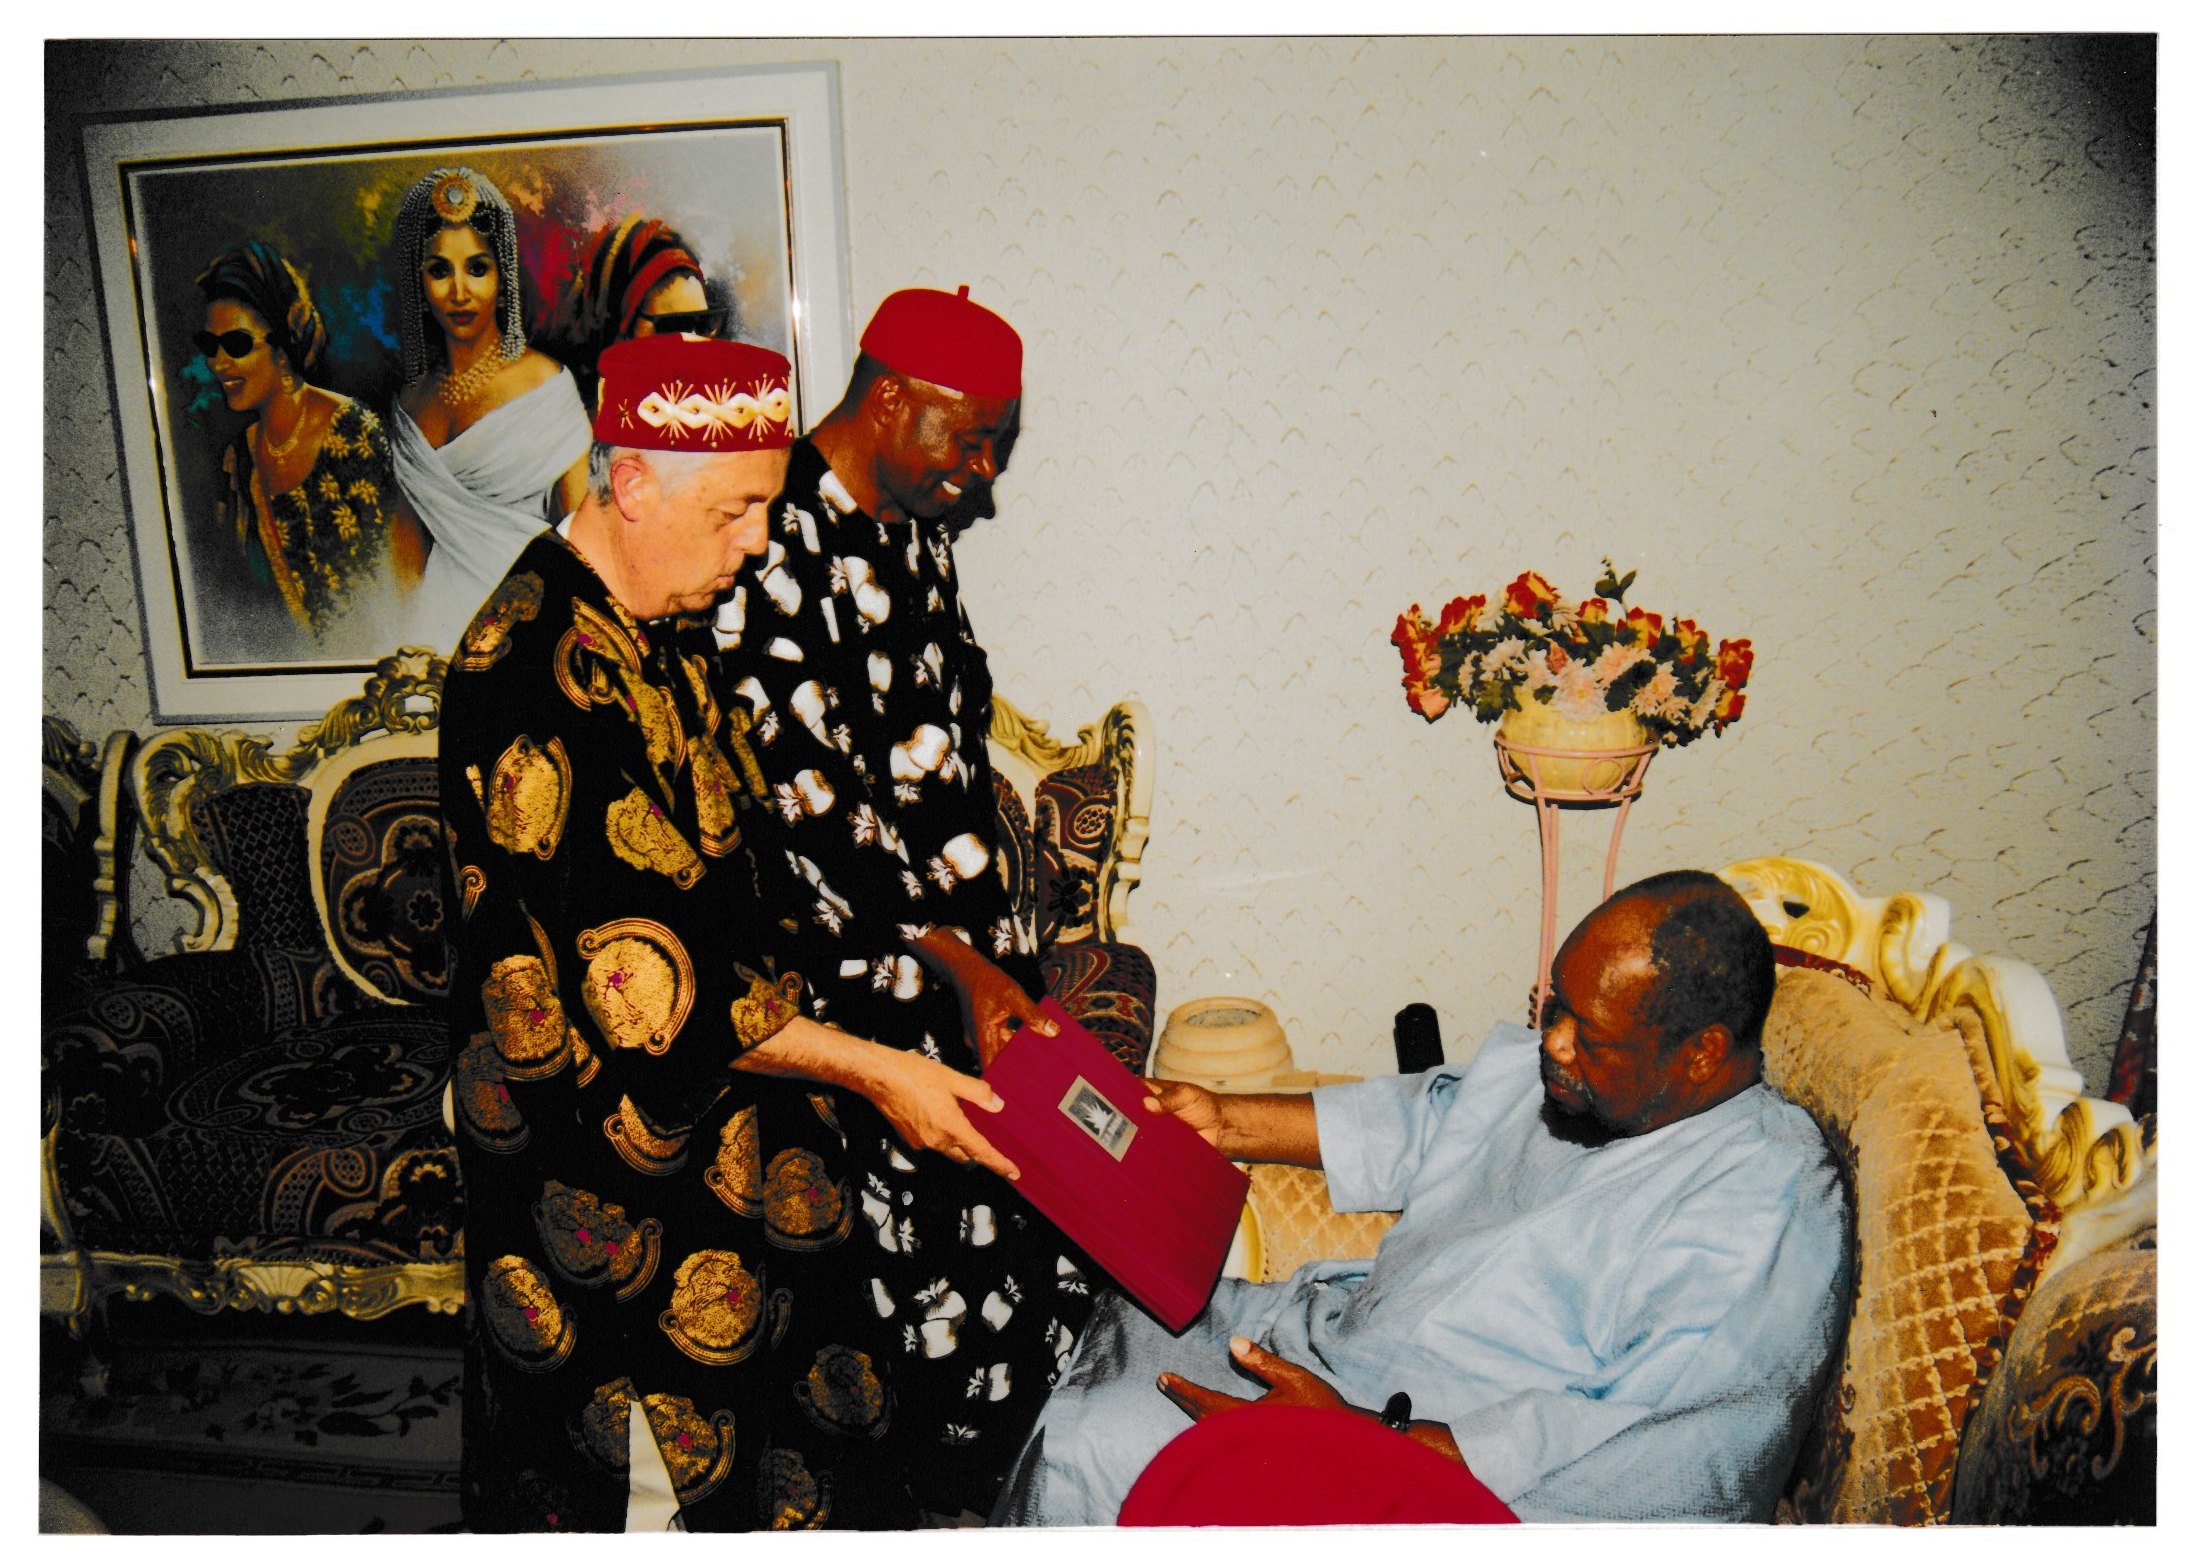 Representants del Biafra C.F. lliuren regals al president Ojukwu, a Enugu.